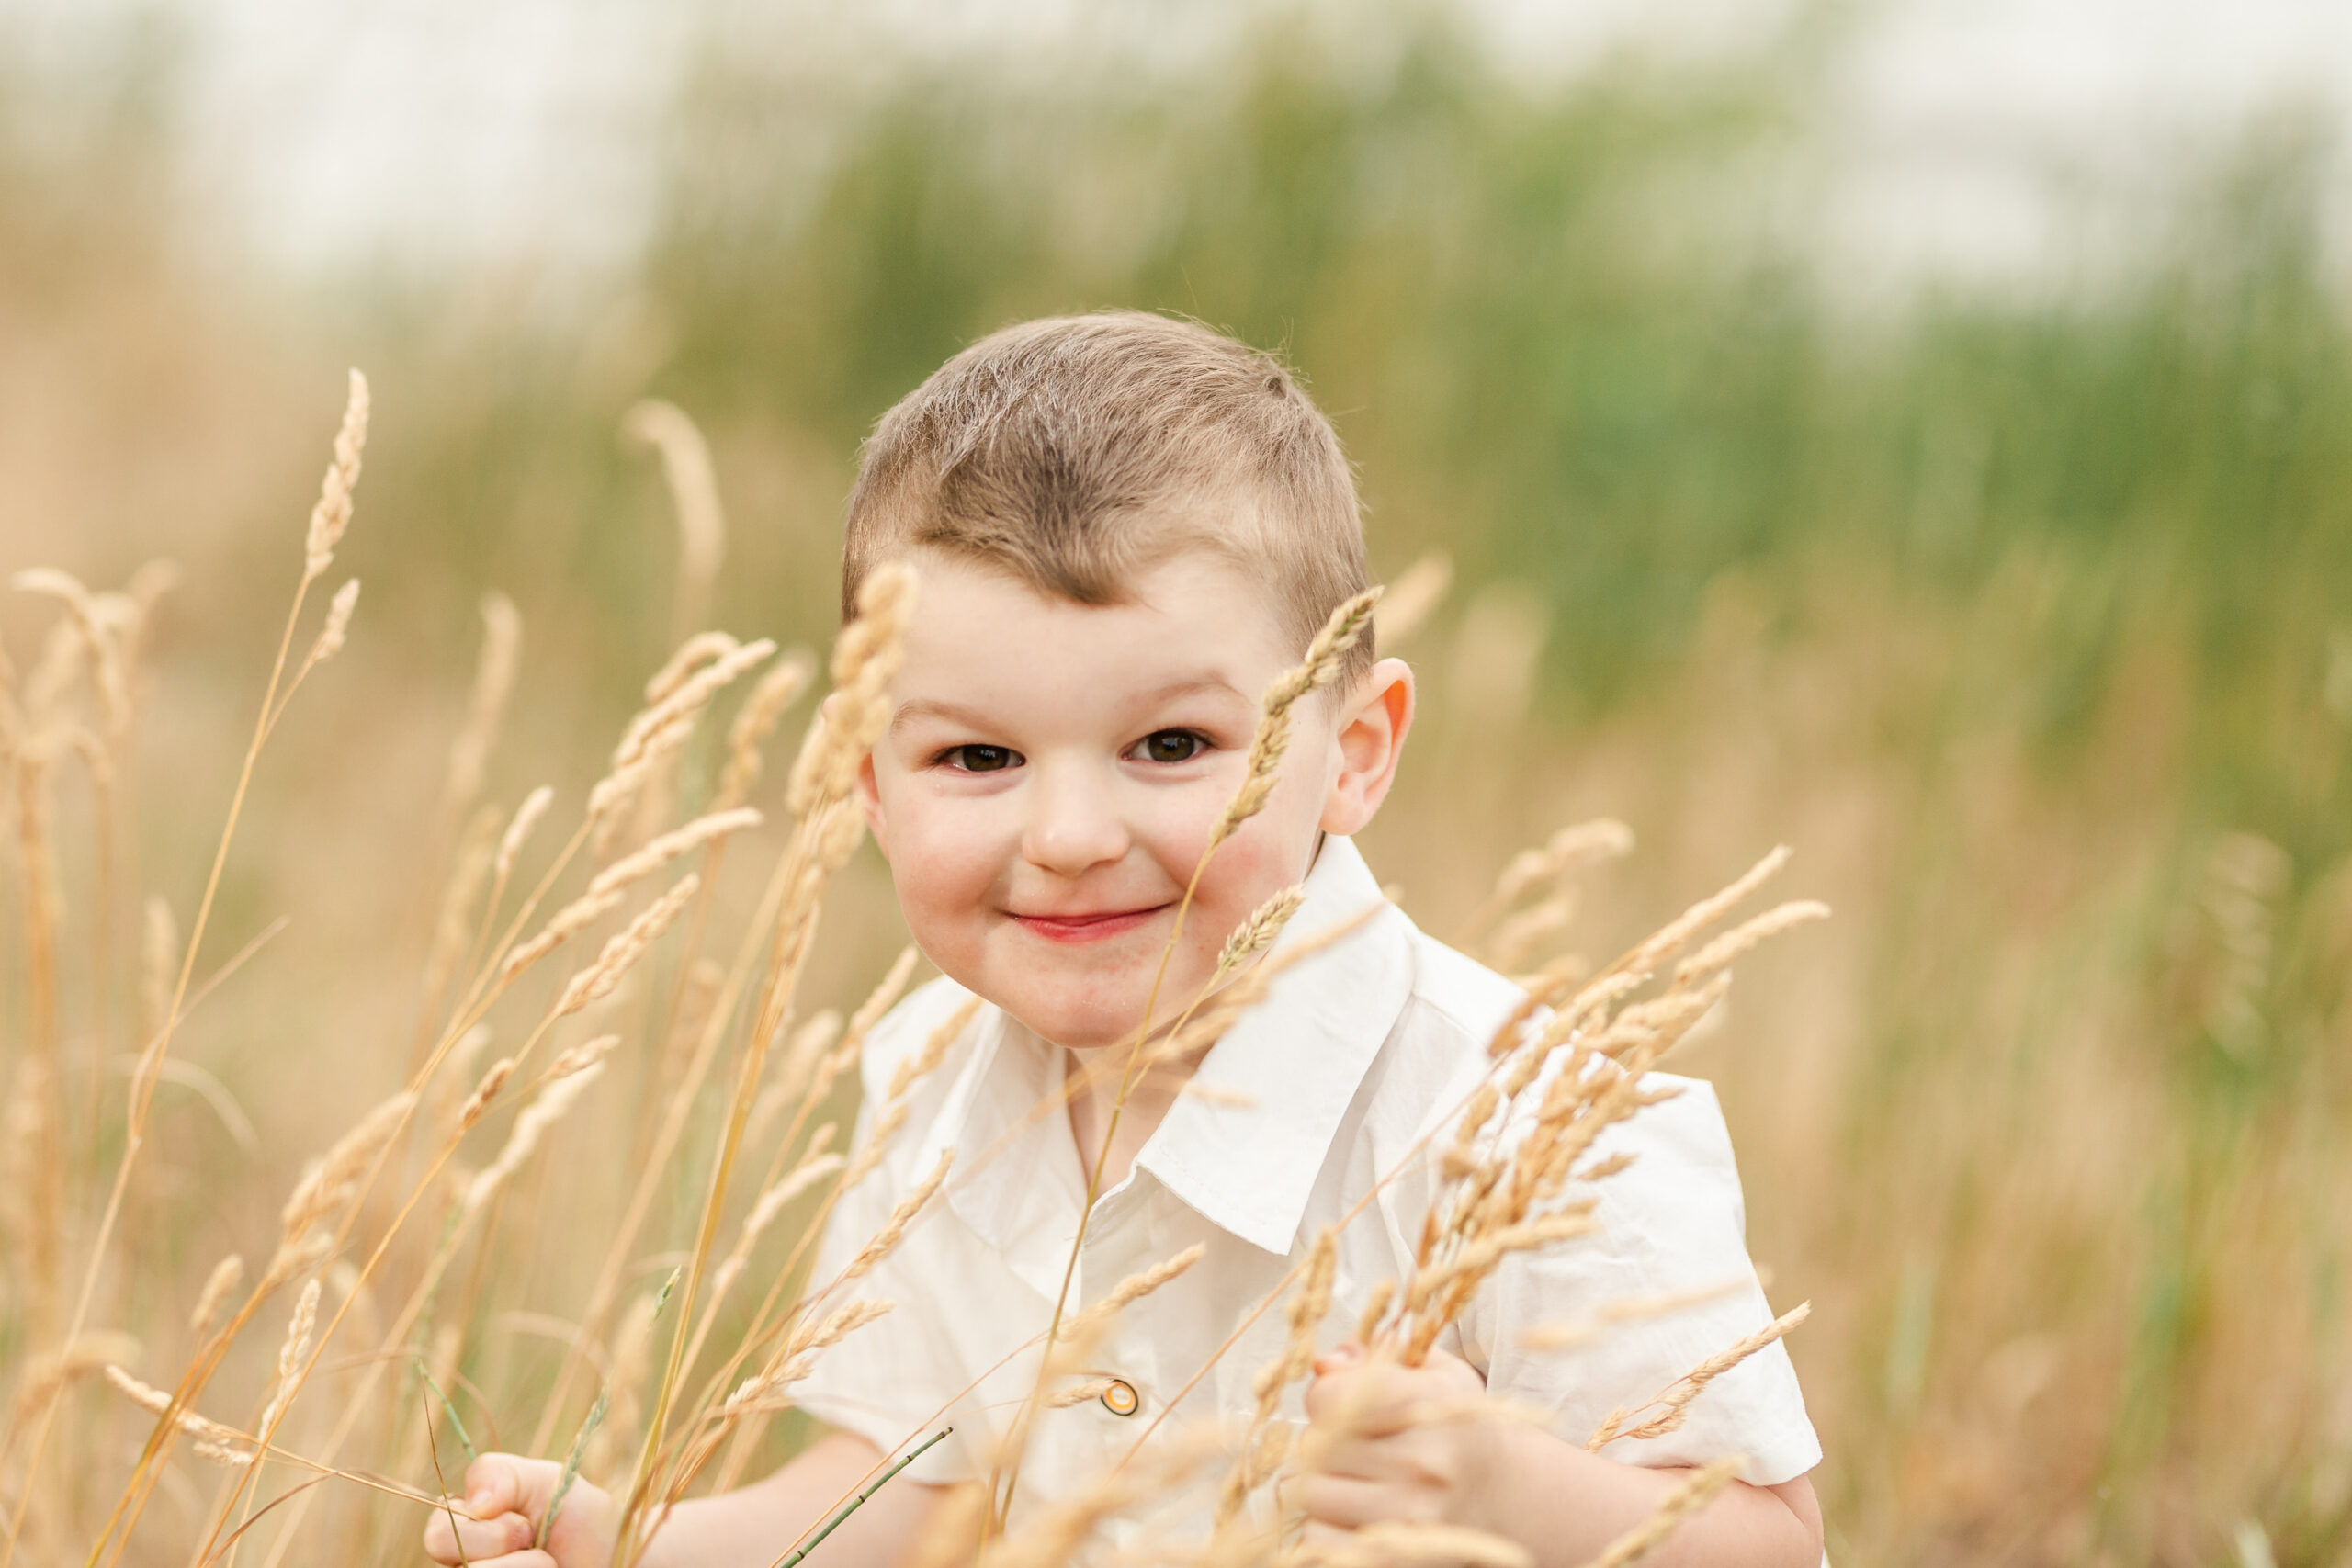 little boy peeking in through the grass in a field